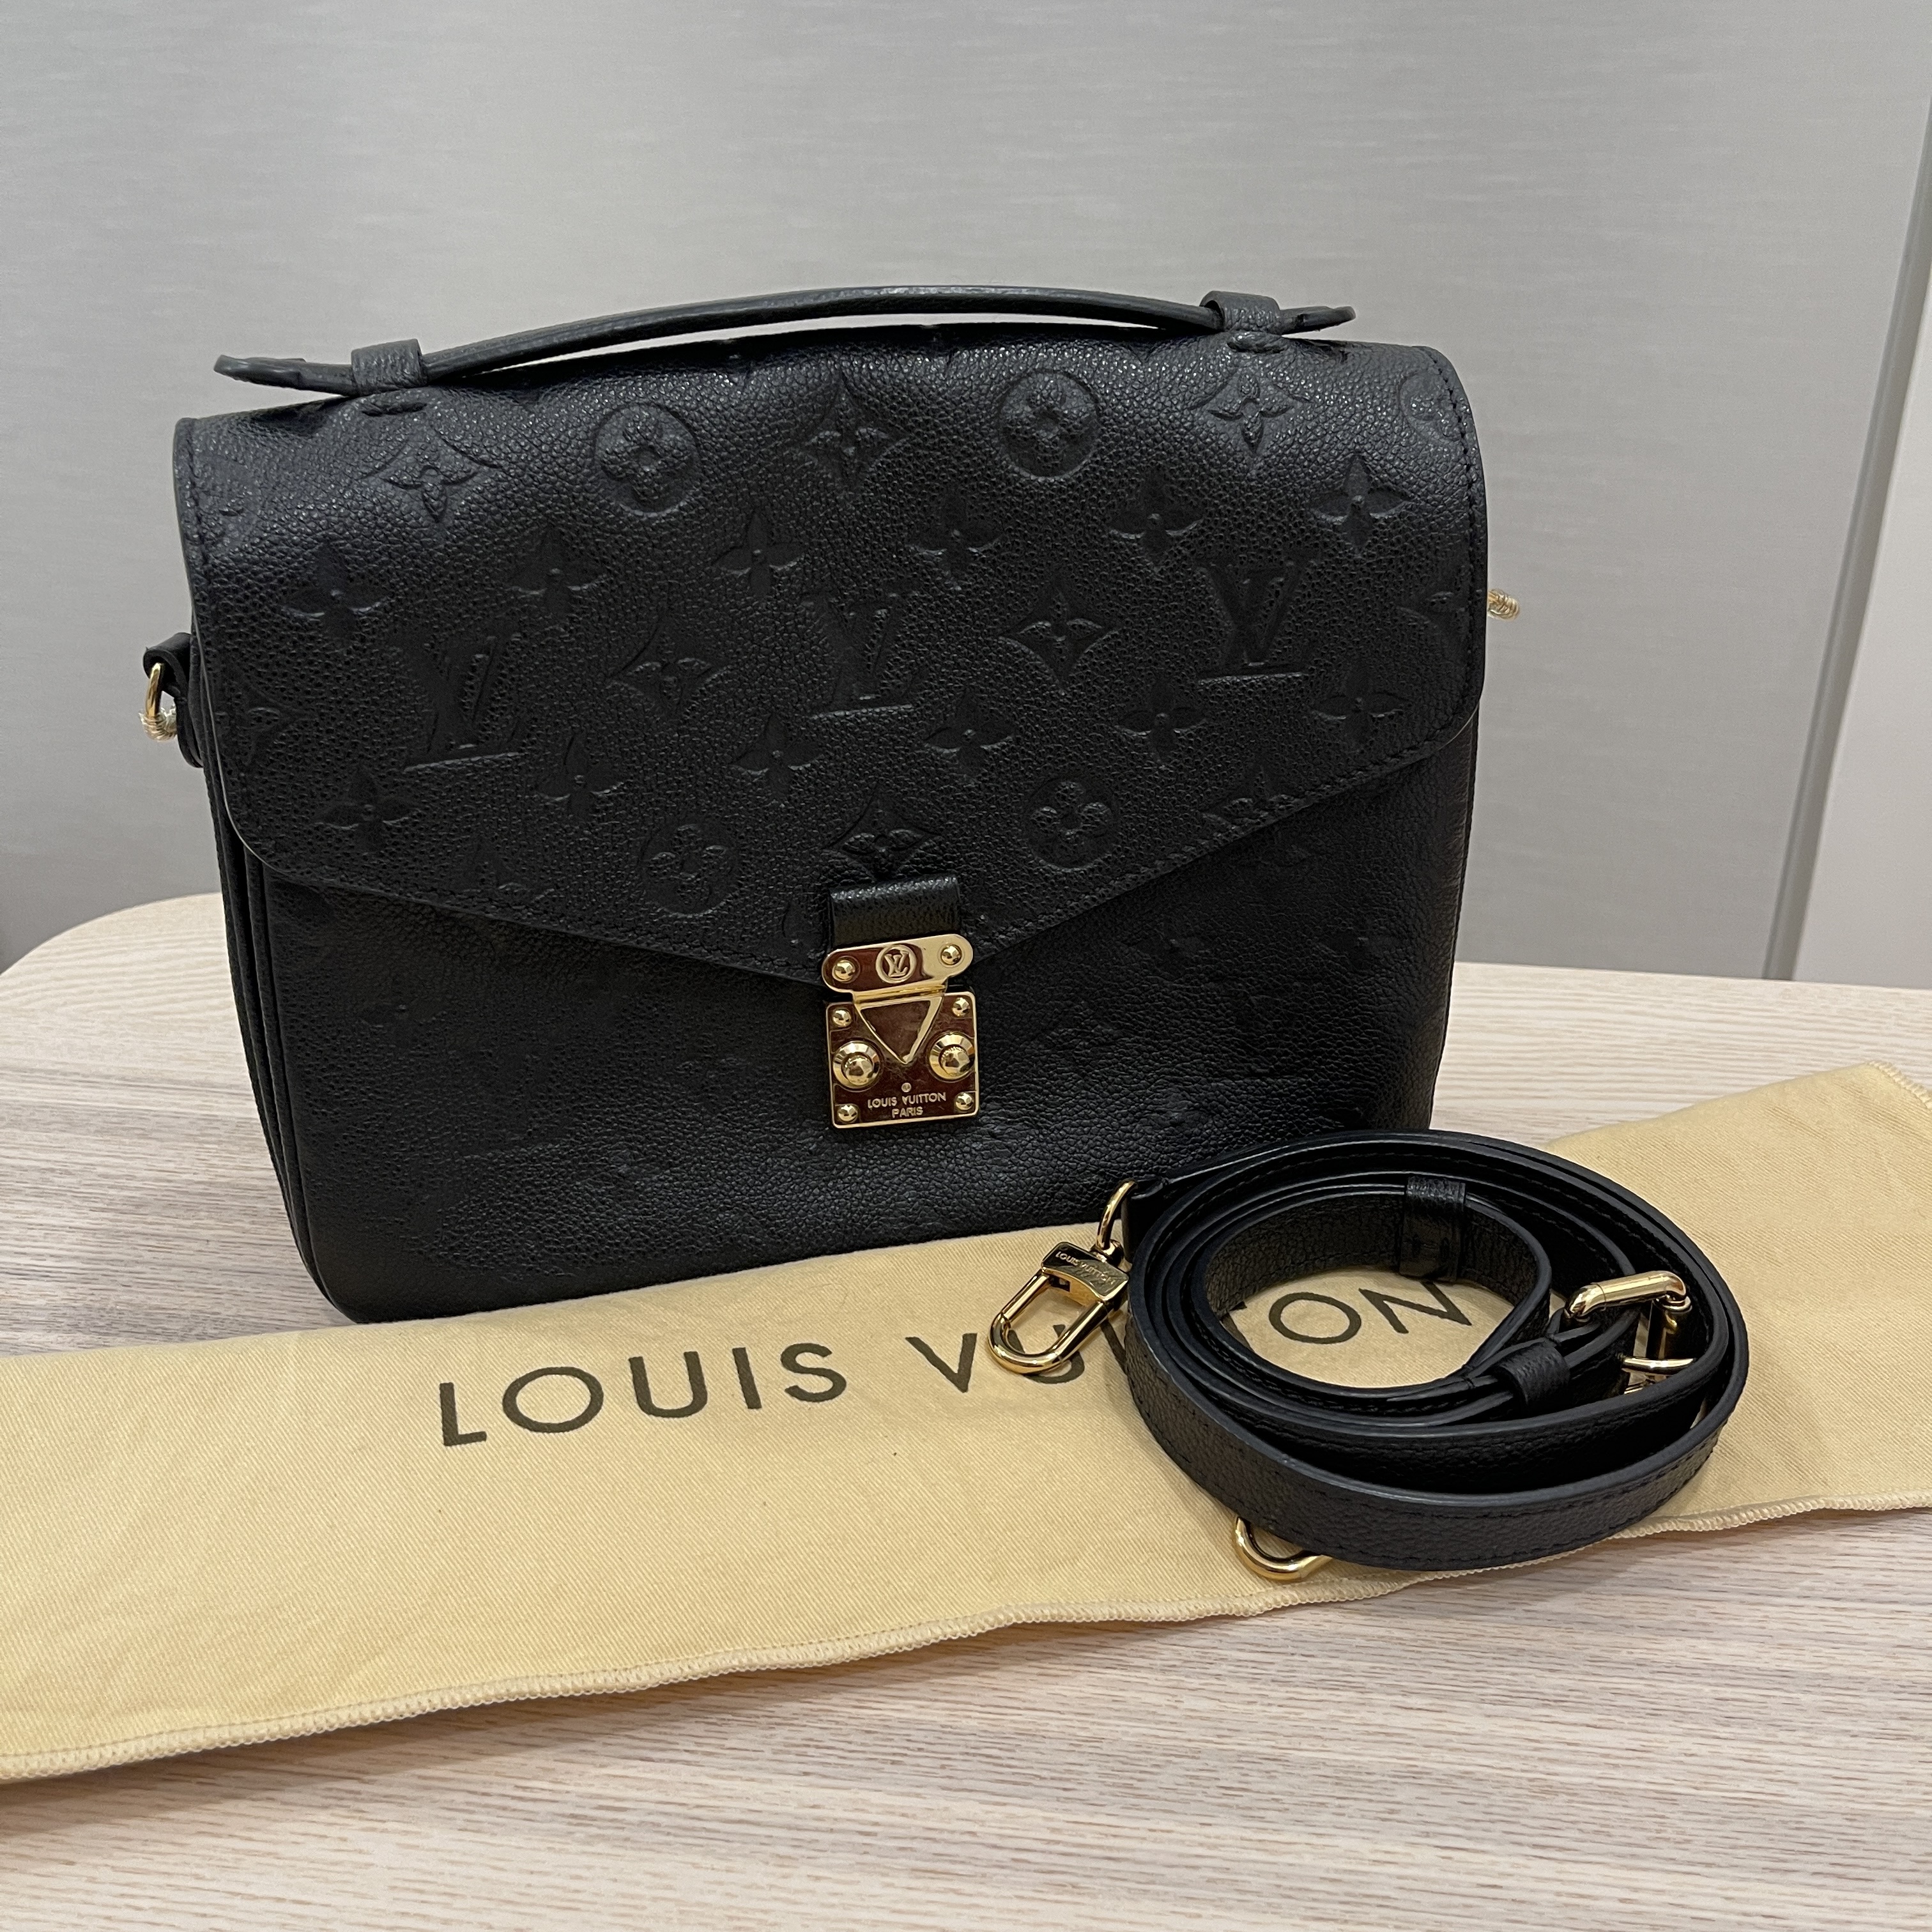 Louis Vuitton Pochette Metis in Noir with bandeau..